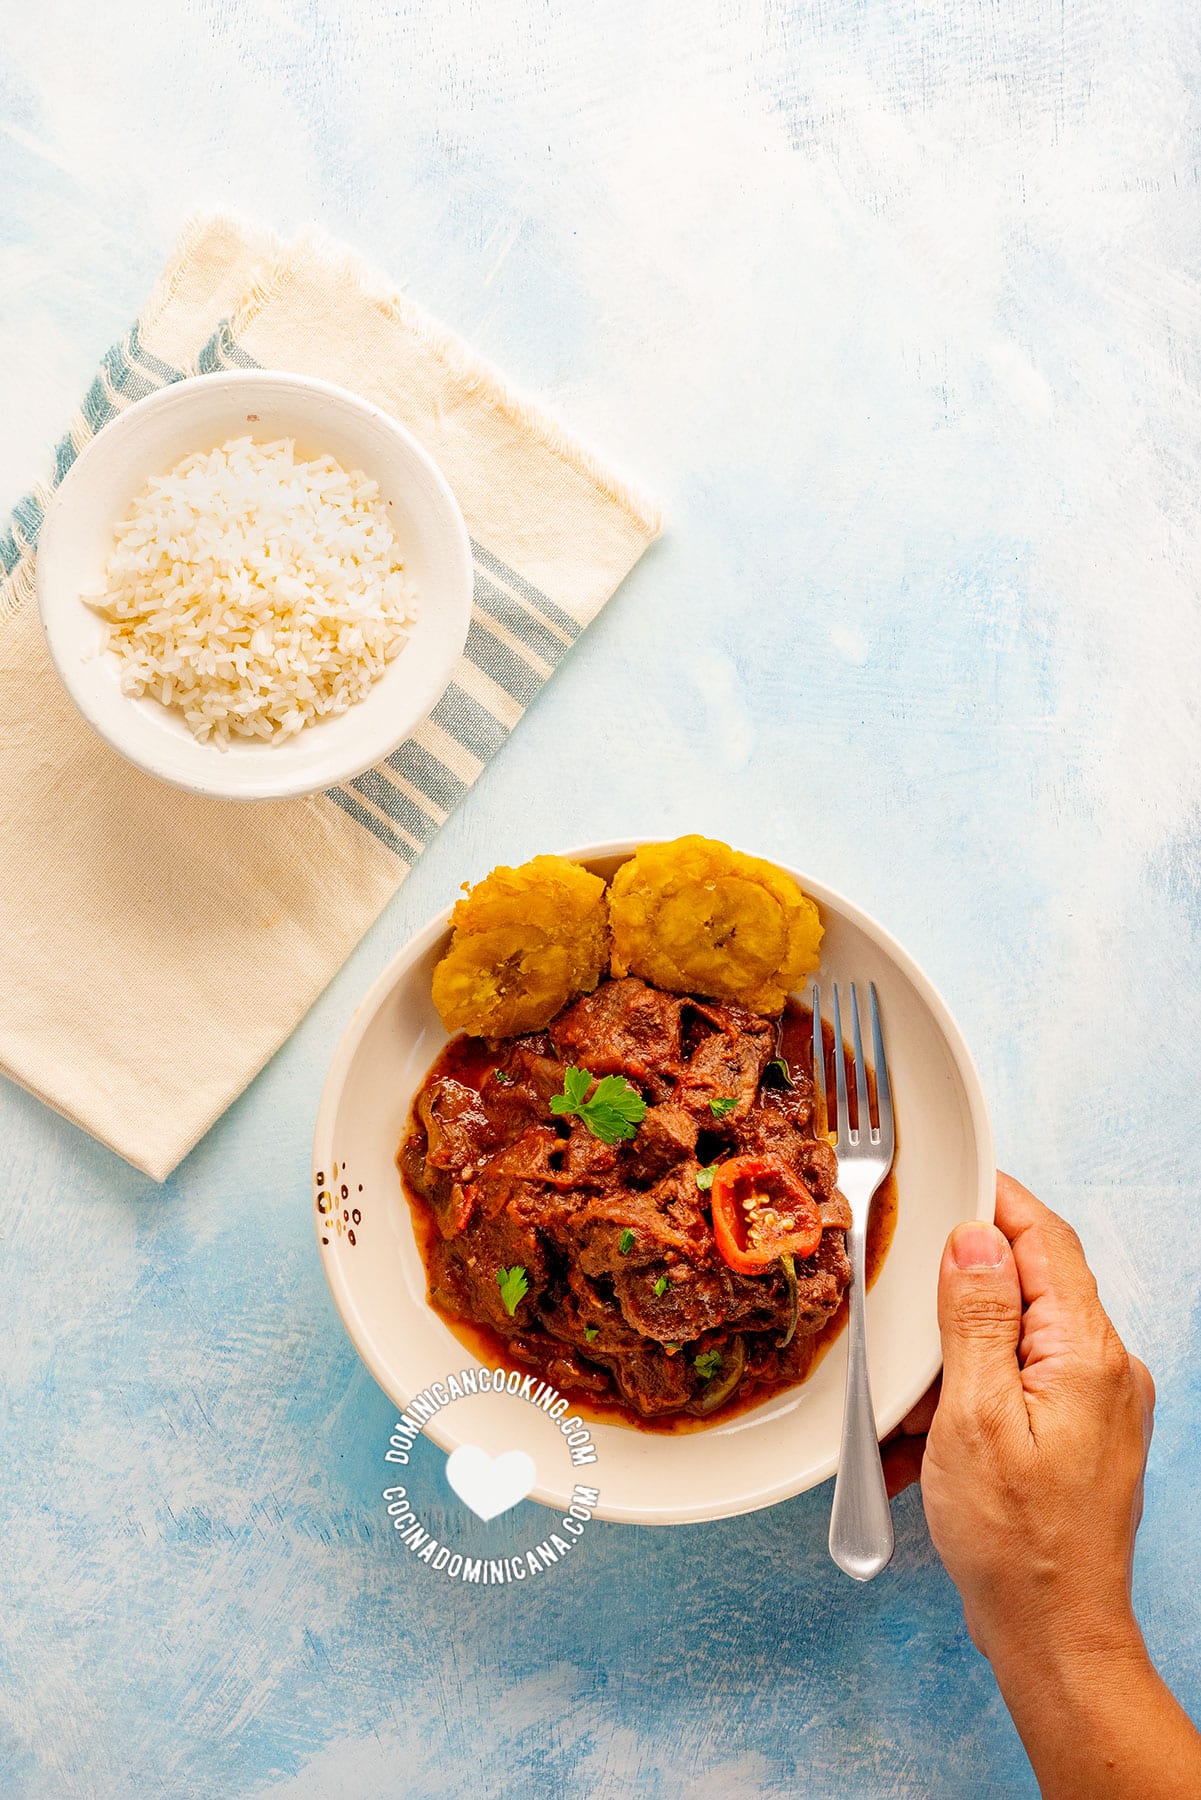 Plato con chivo guisado picante (spicy goat meat stew), con arroz blanco y tostones.